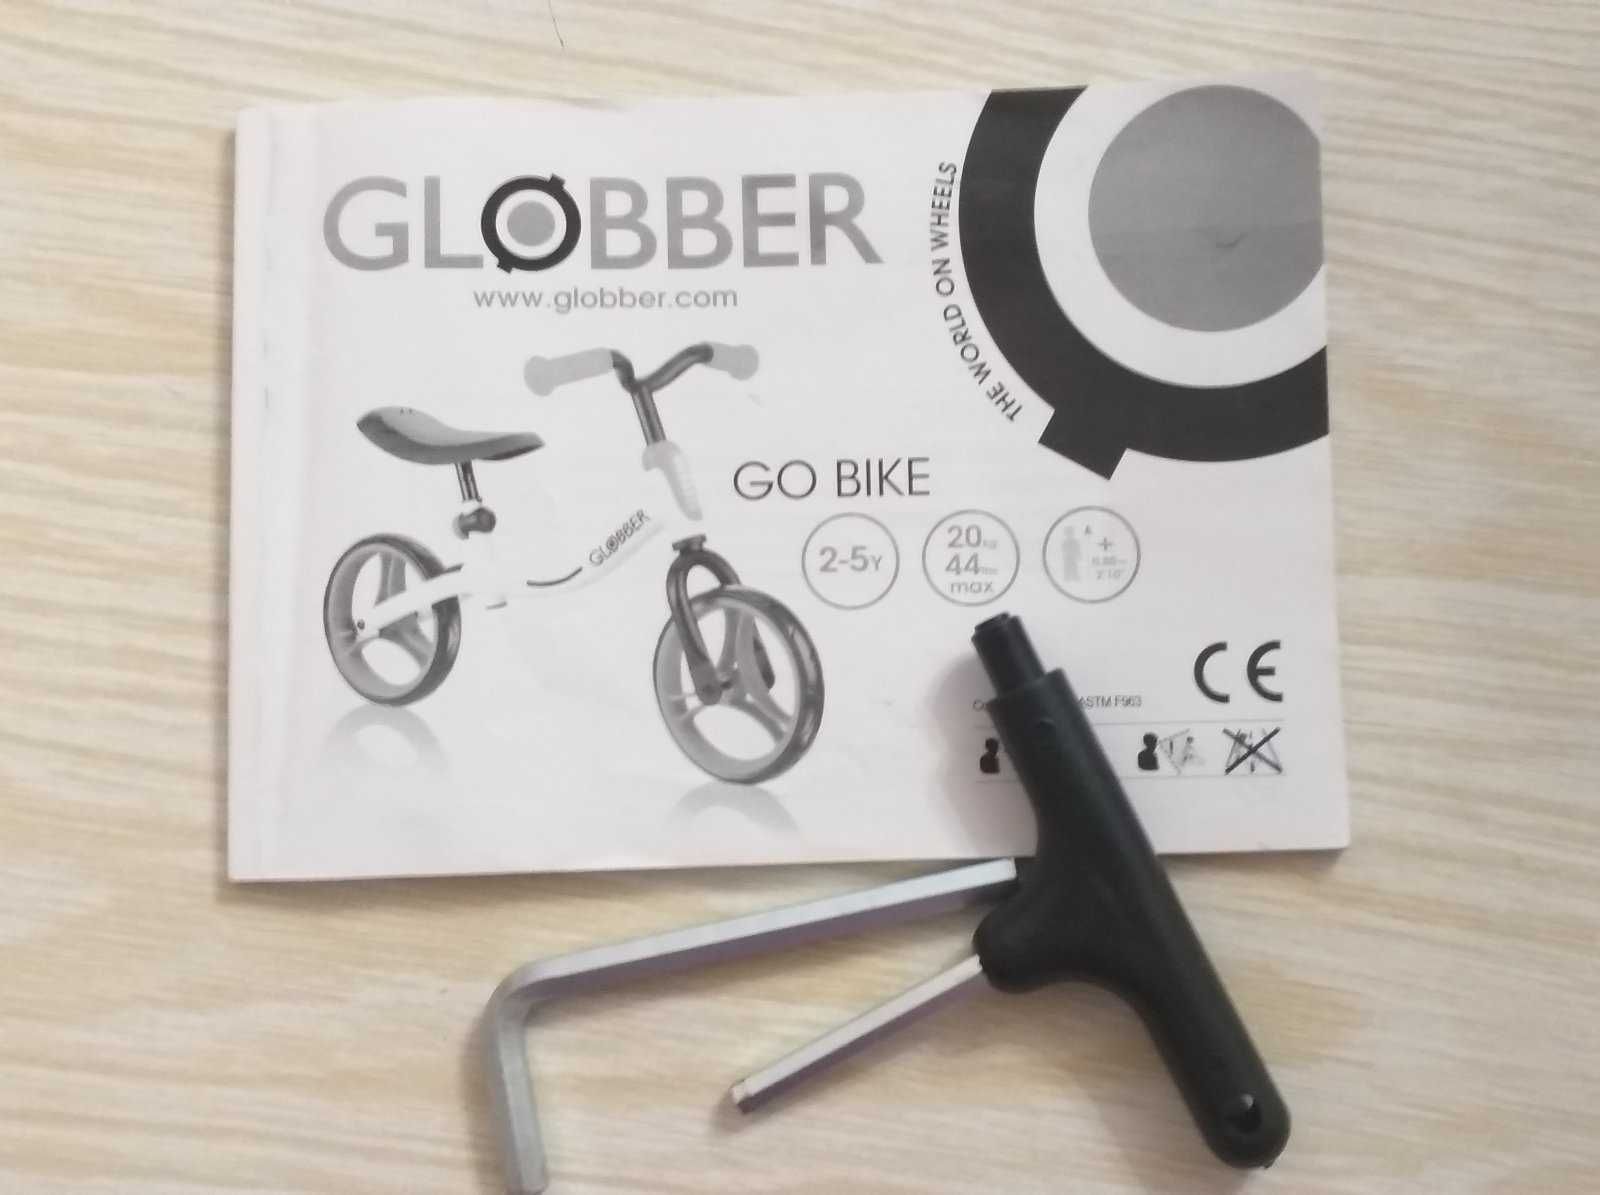 Біговел Globber Go Bike